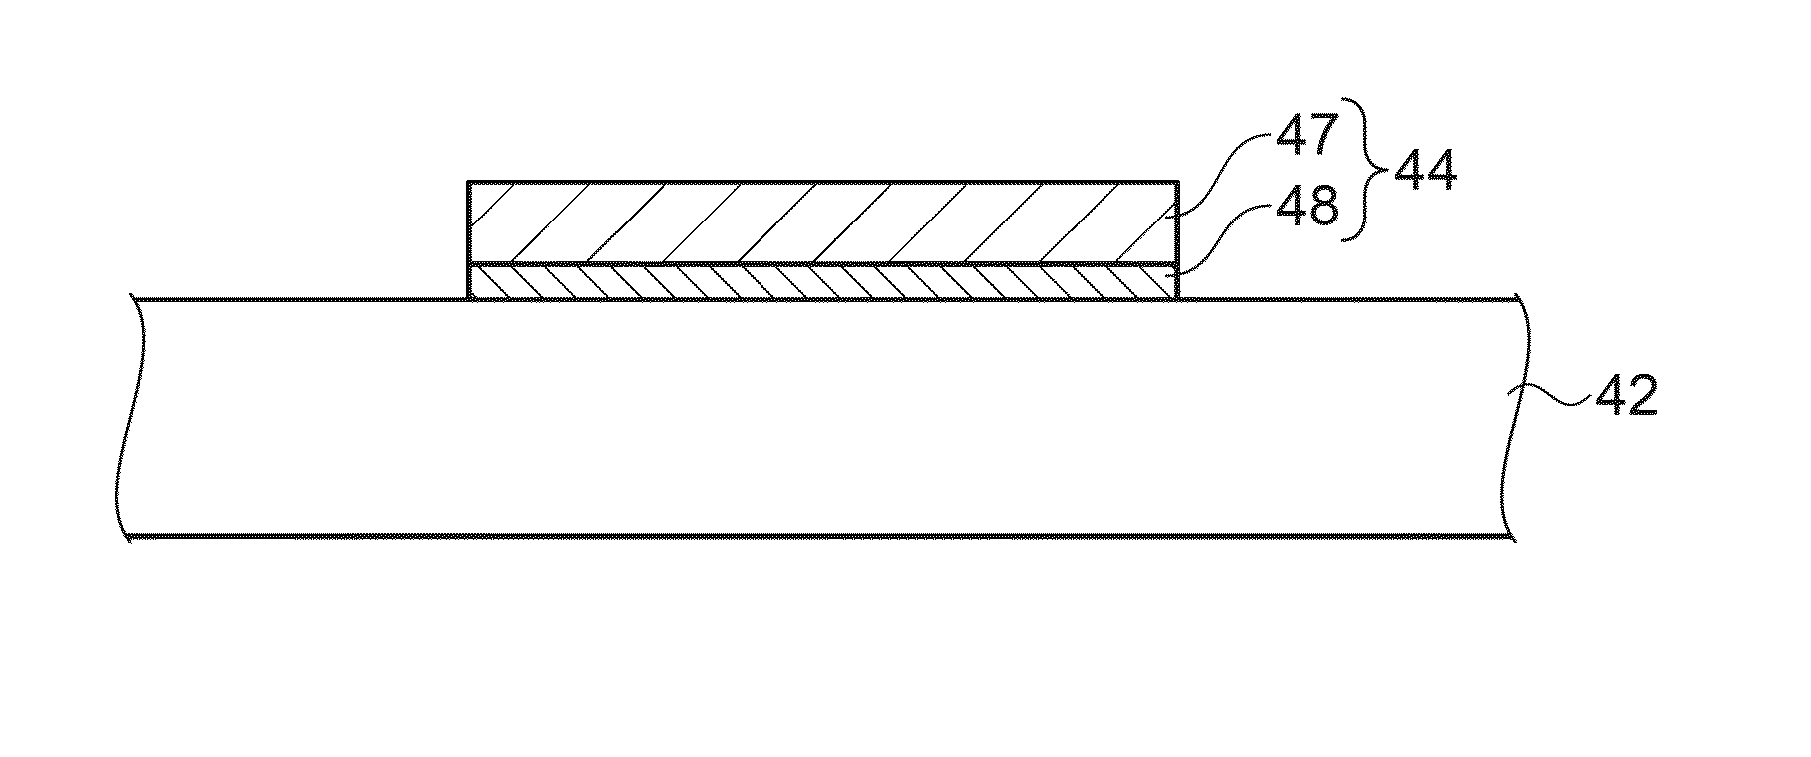 Pixel electrode, display device, method of manufacturing pixel electrode